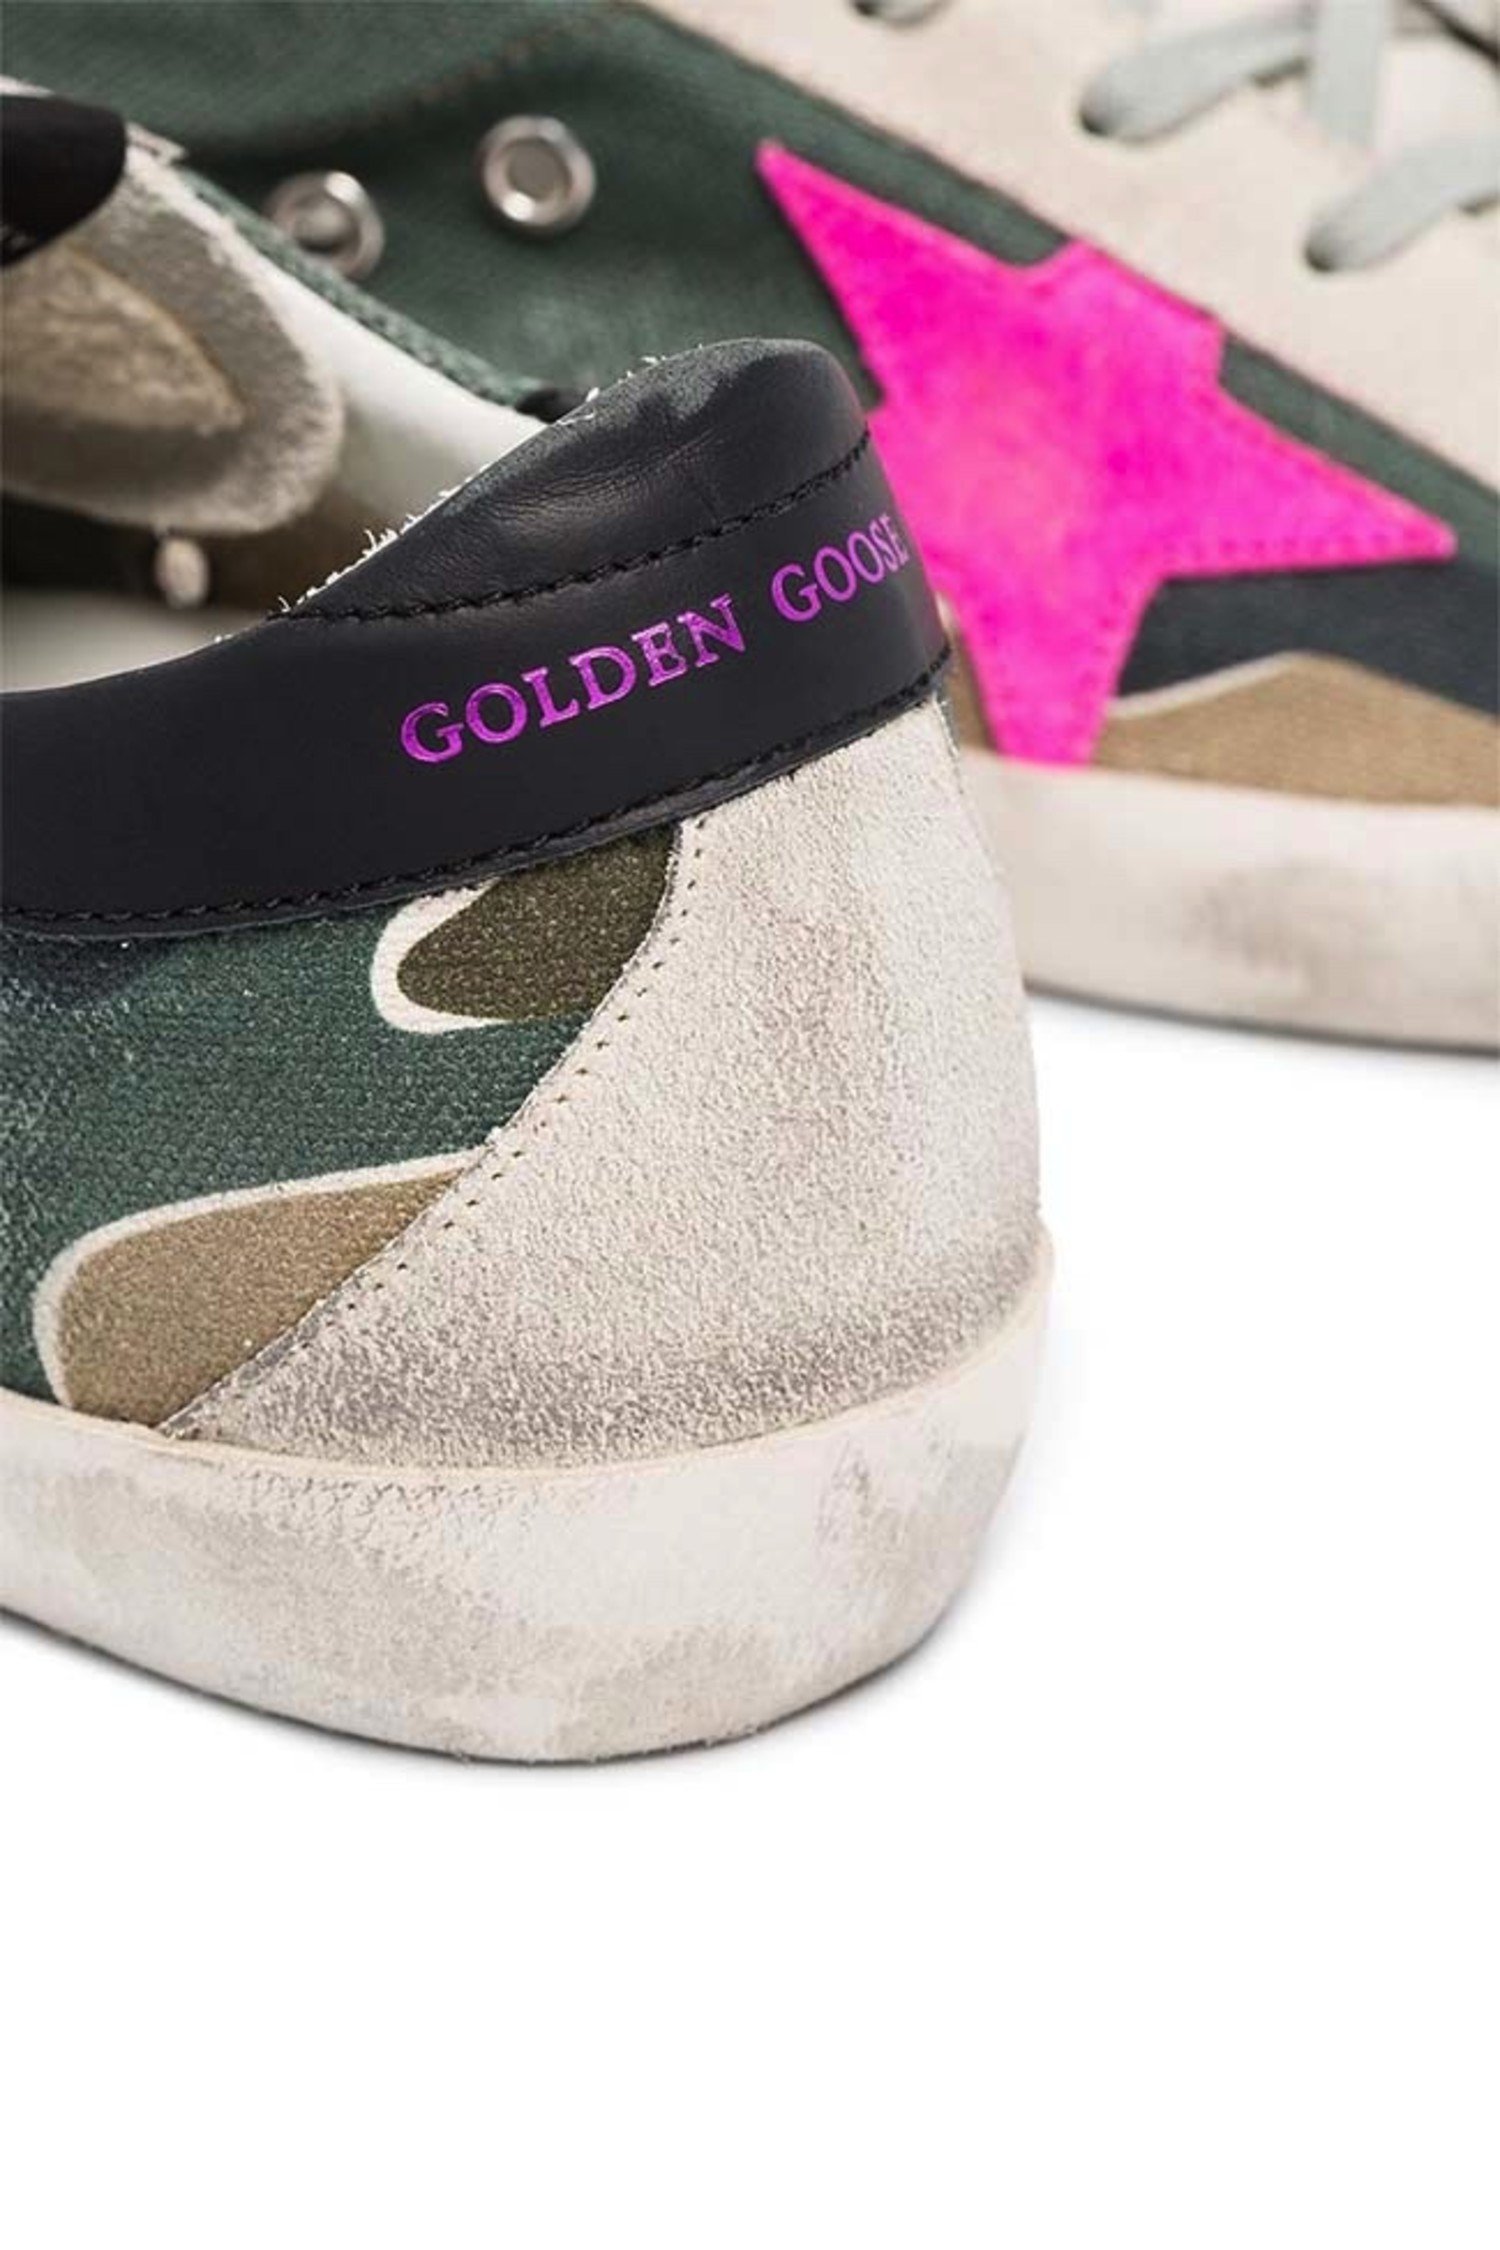 golden goose superstar camo sneakers